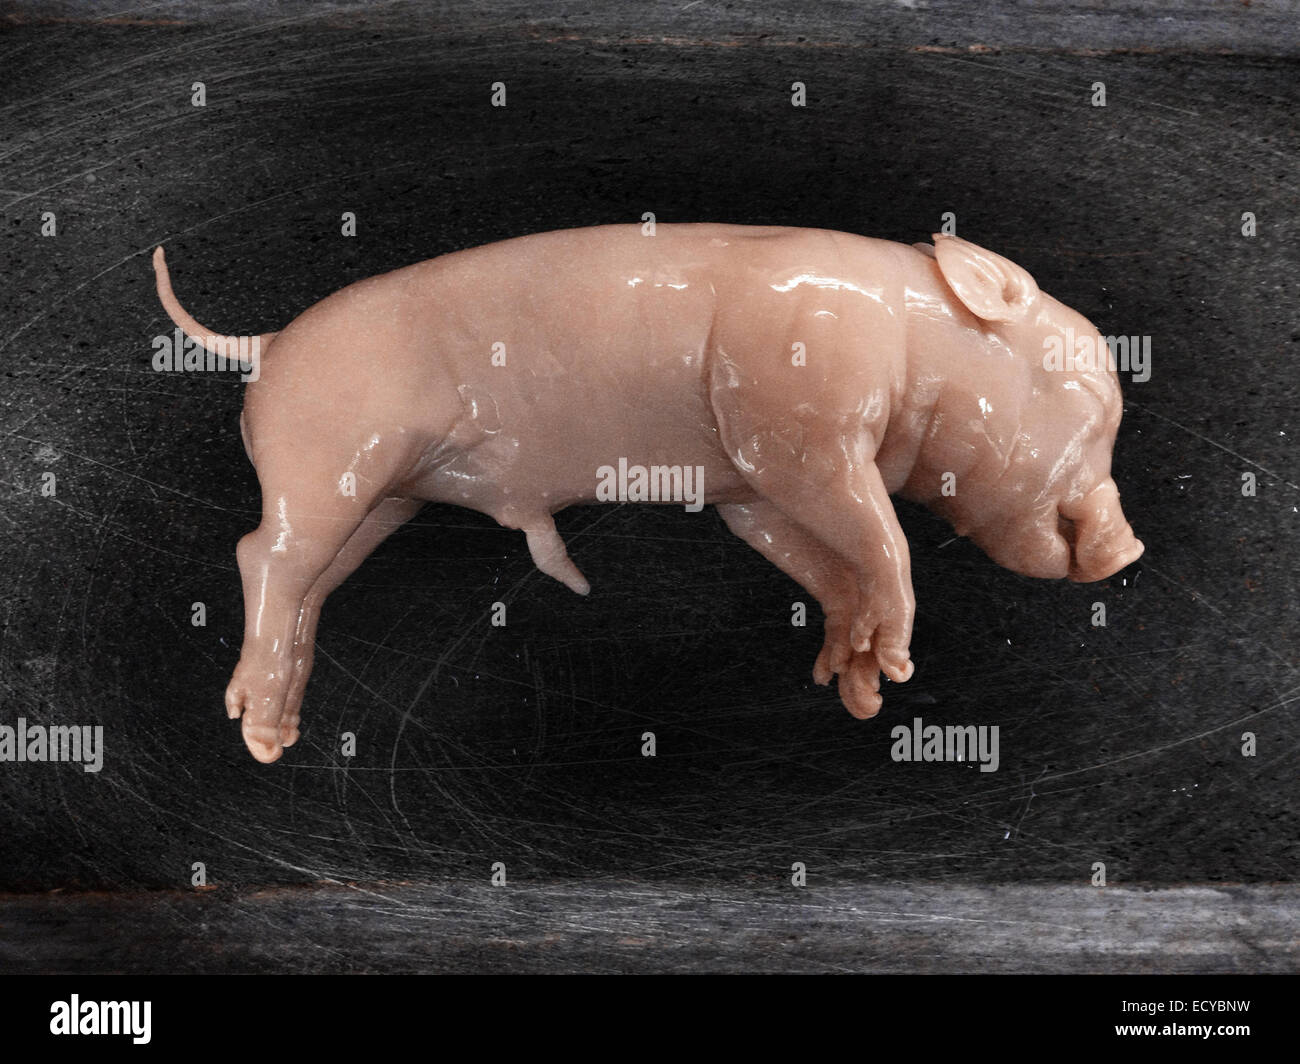 fetal pig small intestine